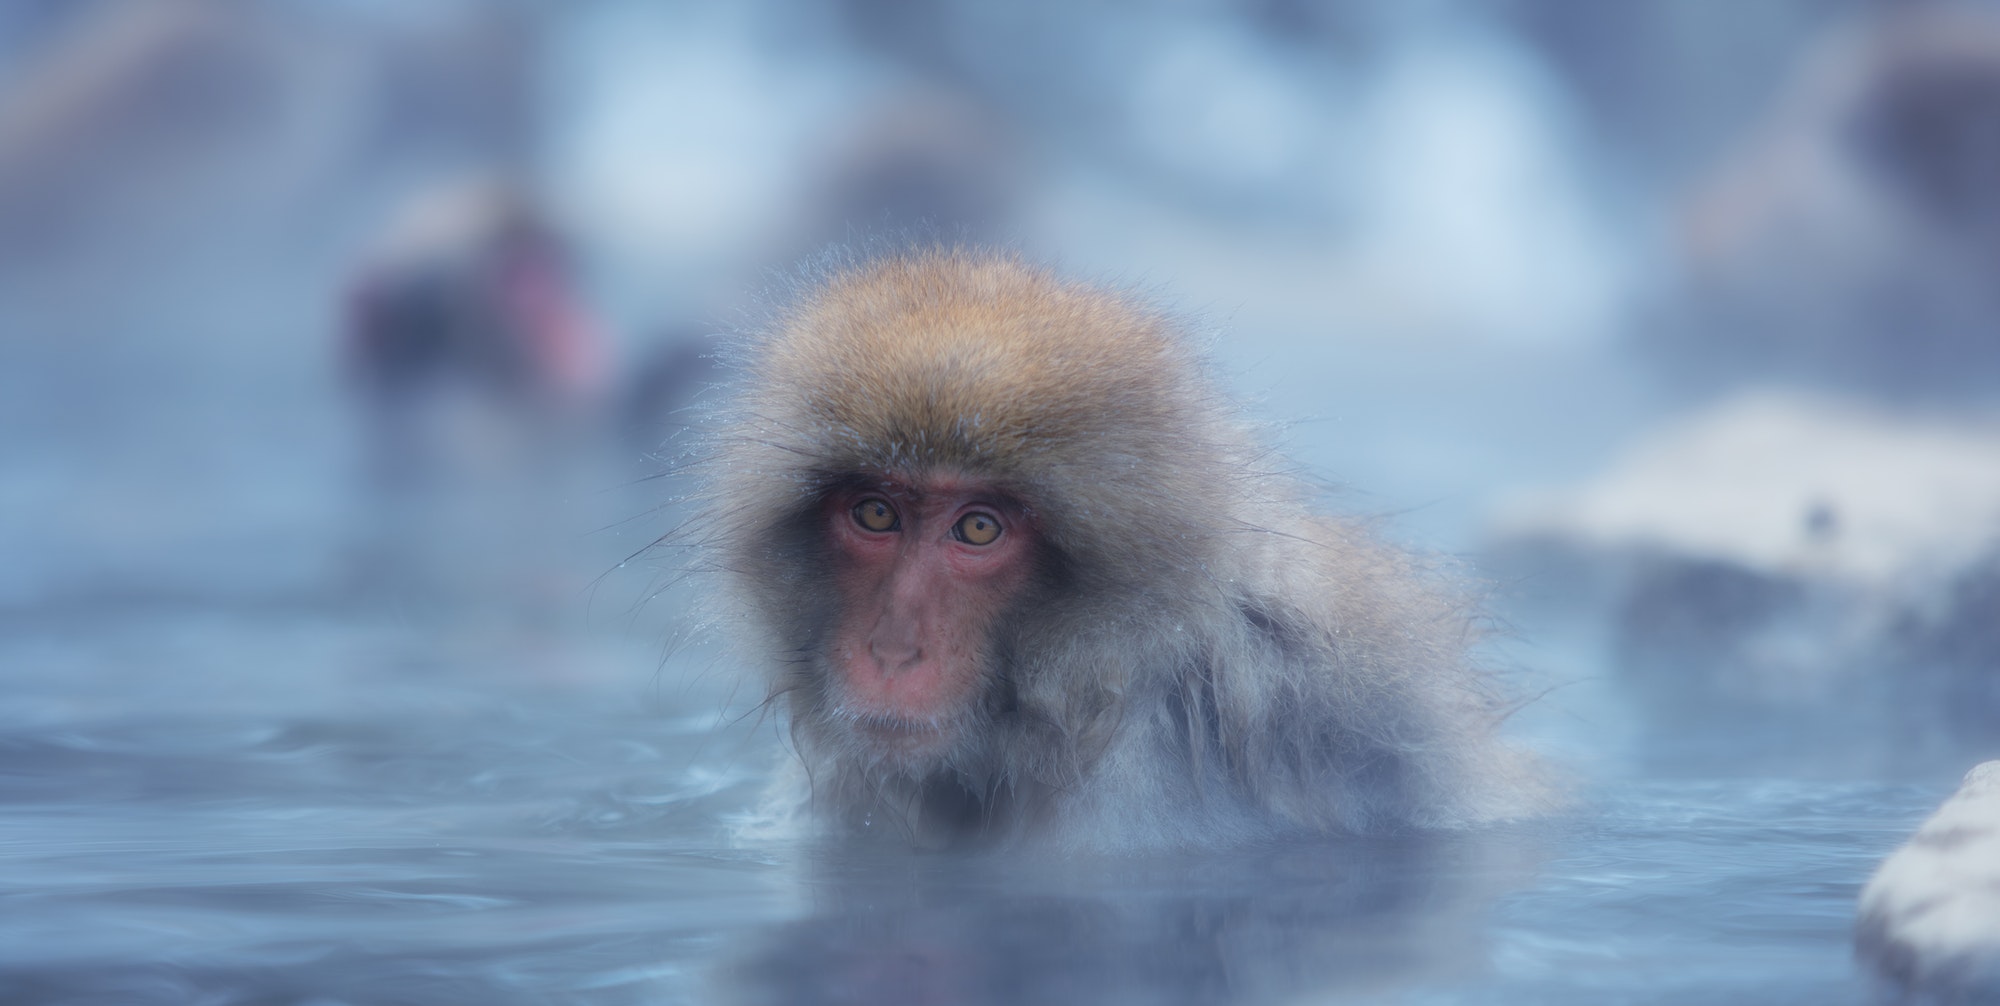 Snow Monkey of Nagano